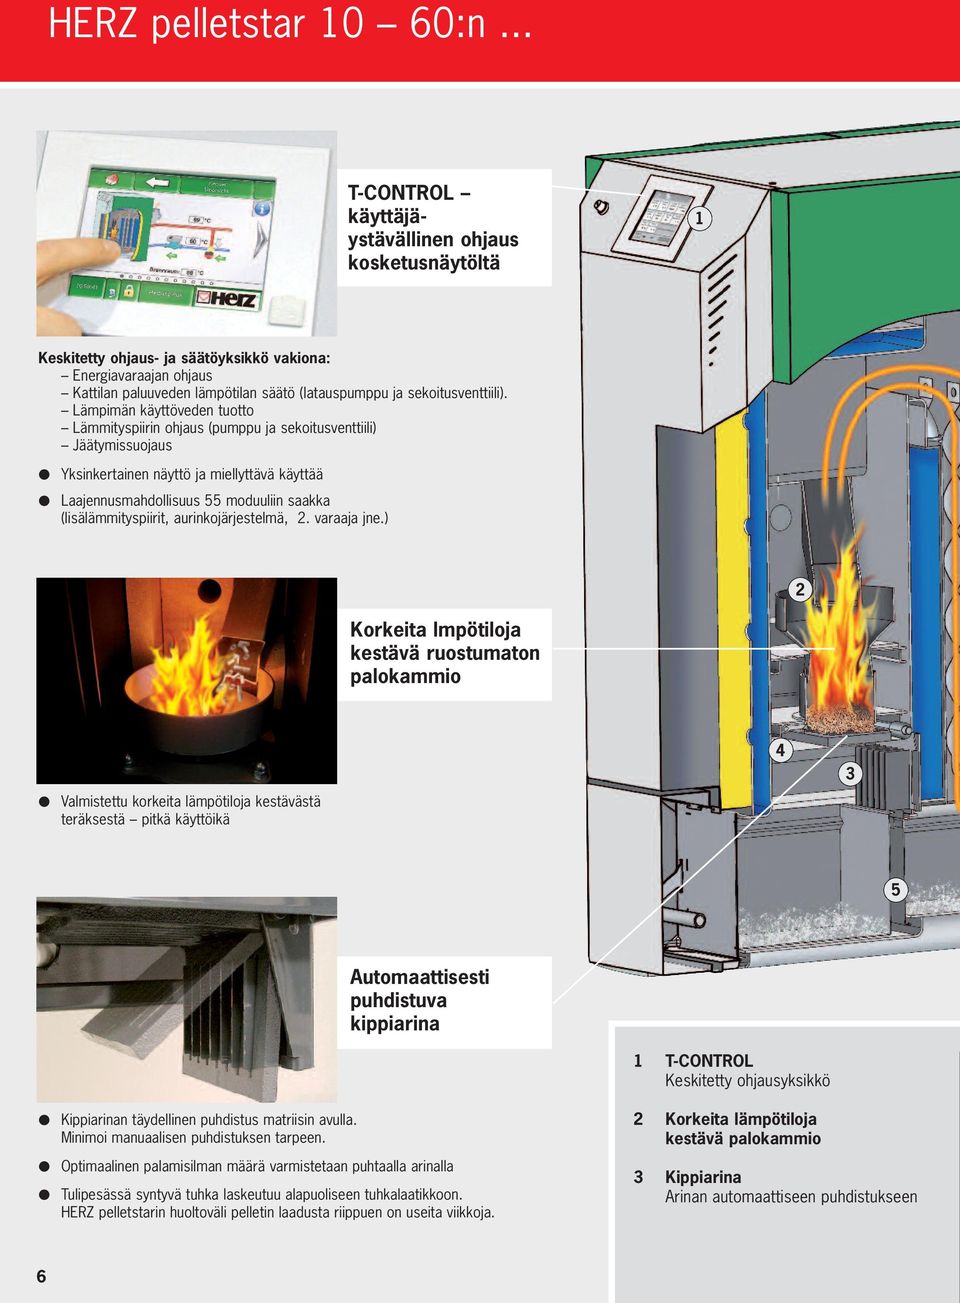 Lämpimän käyttöveden tuotto Lämmityspiirin ohjaus (pumppu ja sekoitusventtiili) Jäätymissuojaus Yksinkertainen näyttö ja miellyttävä käyttää Laajennusmahdollisuus 55 moduuliin saakka